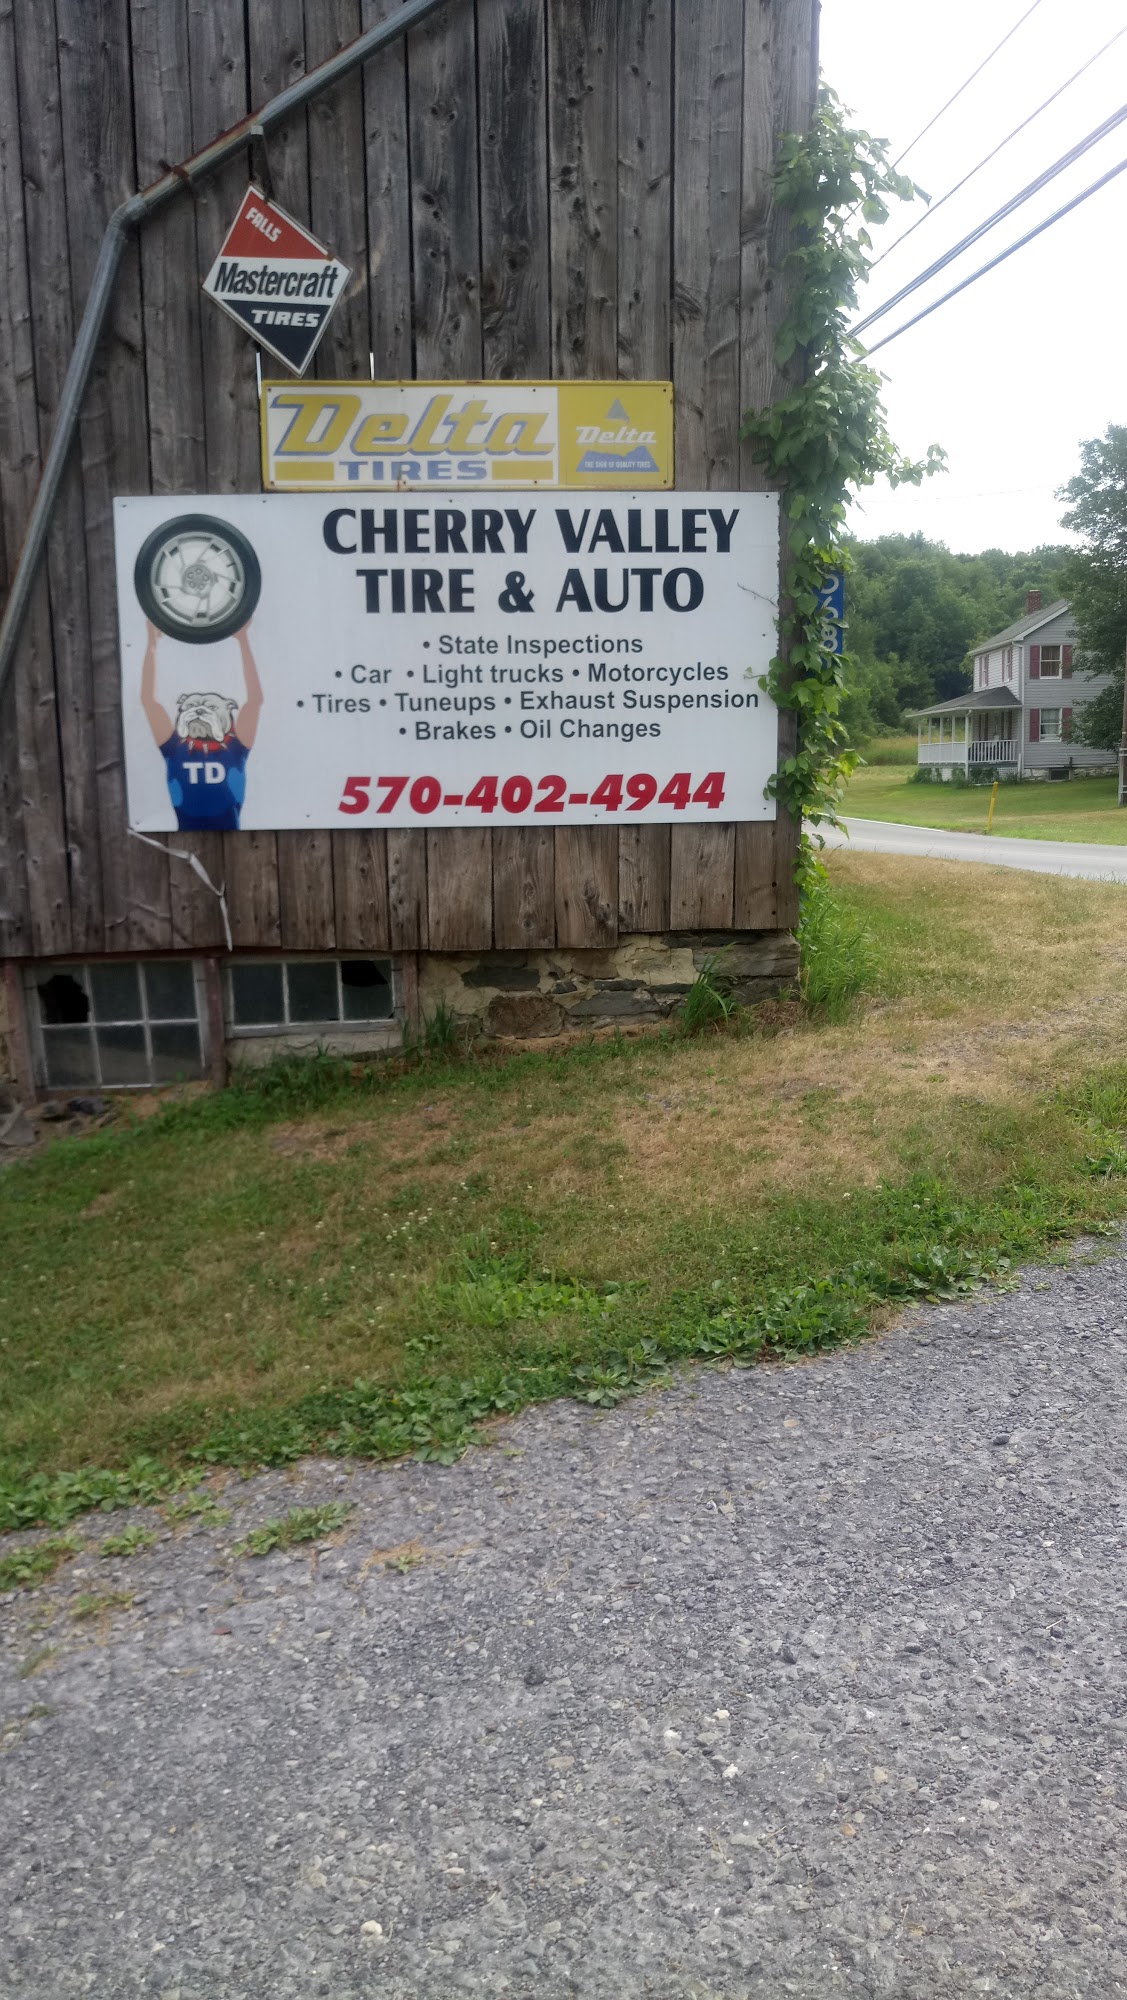 Cherry Valley Tire & Auto